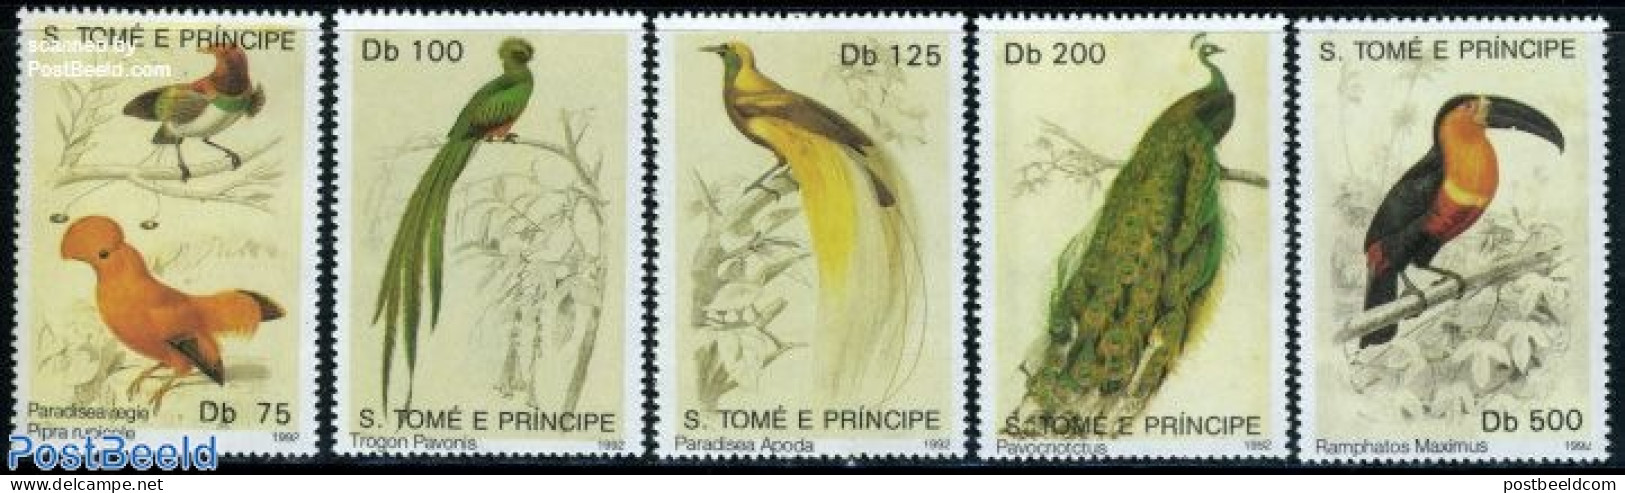 Sao Tome/Principe 1992 Birds 5v, Mint NH, Nature - Birds - São Tomé Und Príncipe